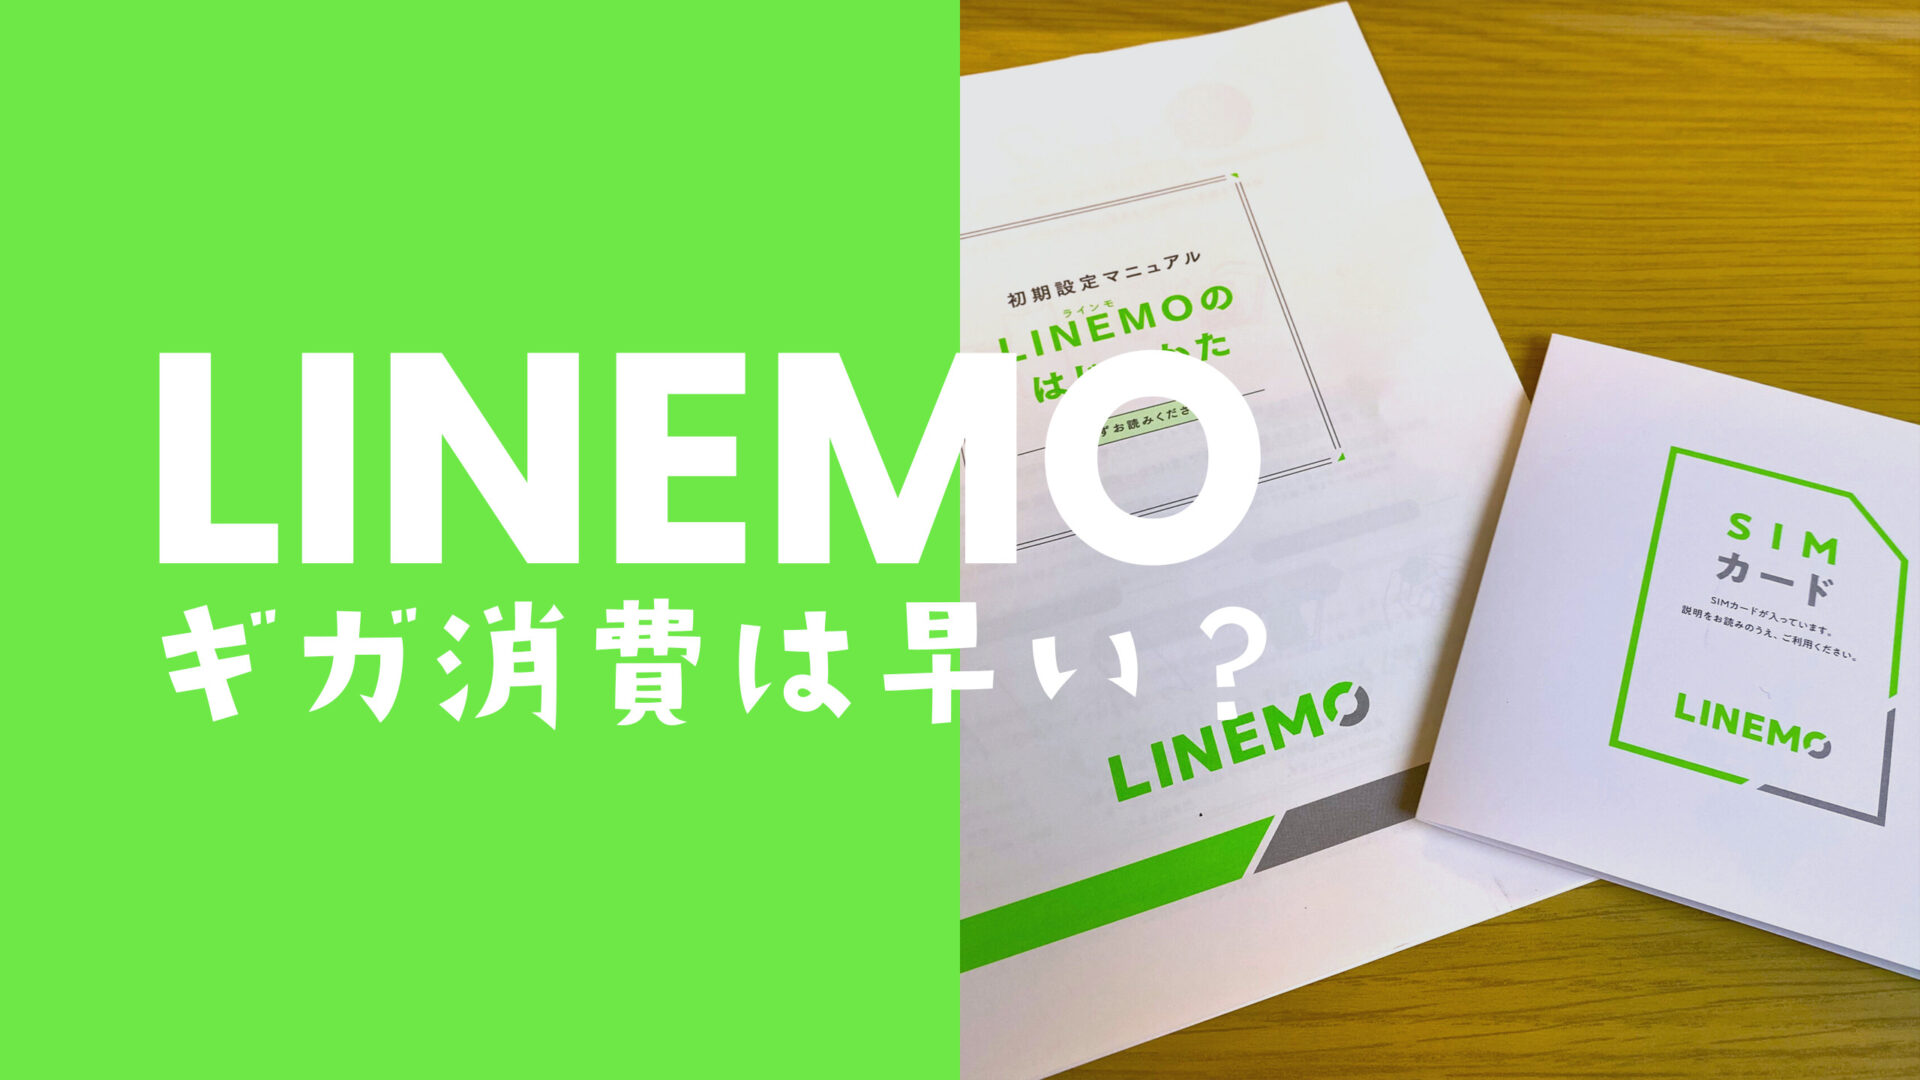 LINEMO(ラインモ)はギガ消費が早い？他社と同じ基準だが小容量のミニプランは消費しやすい。のサムネイル画像